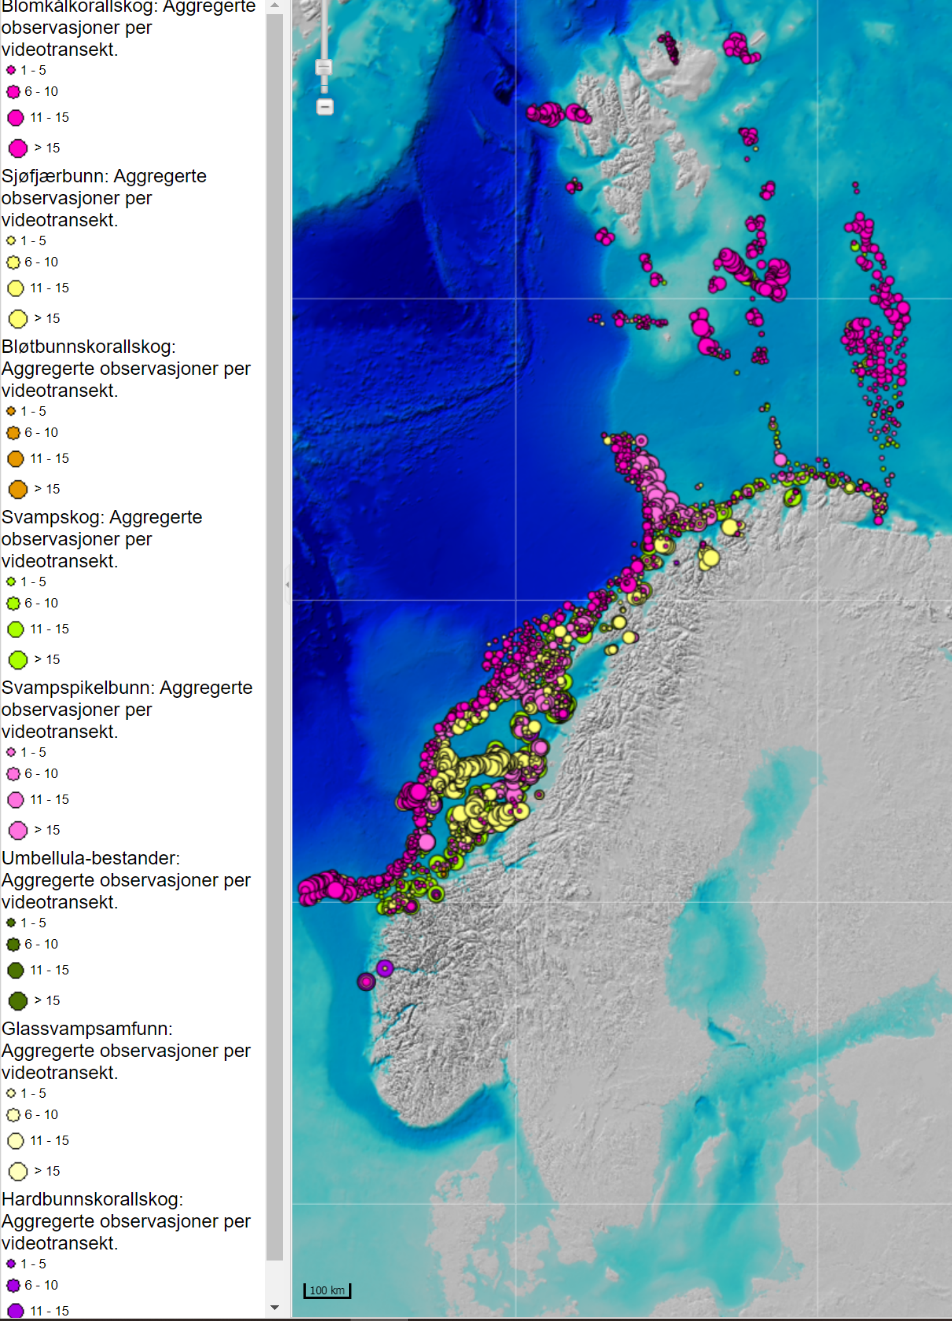 Utbredelsen av sårbare arter (koraller, svamper, sjøfjær) i Barentshavet og Norskehavet kartlagt av MAREANO.